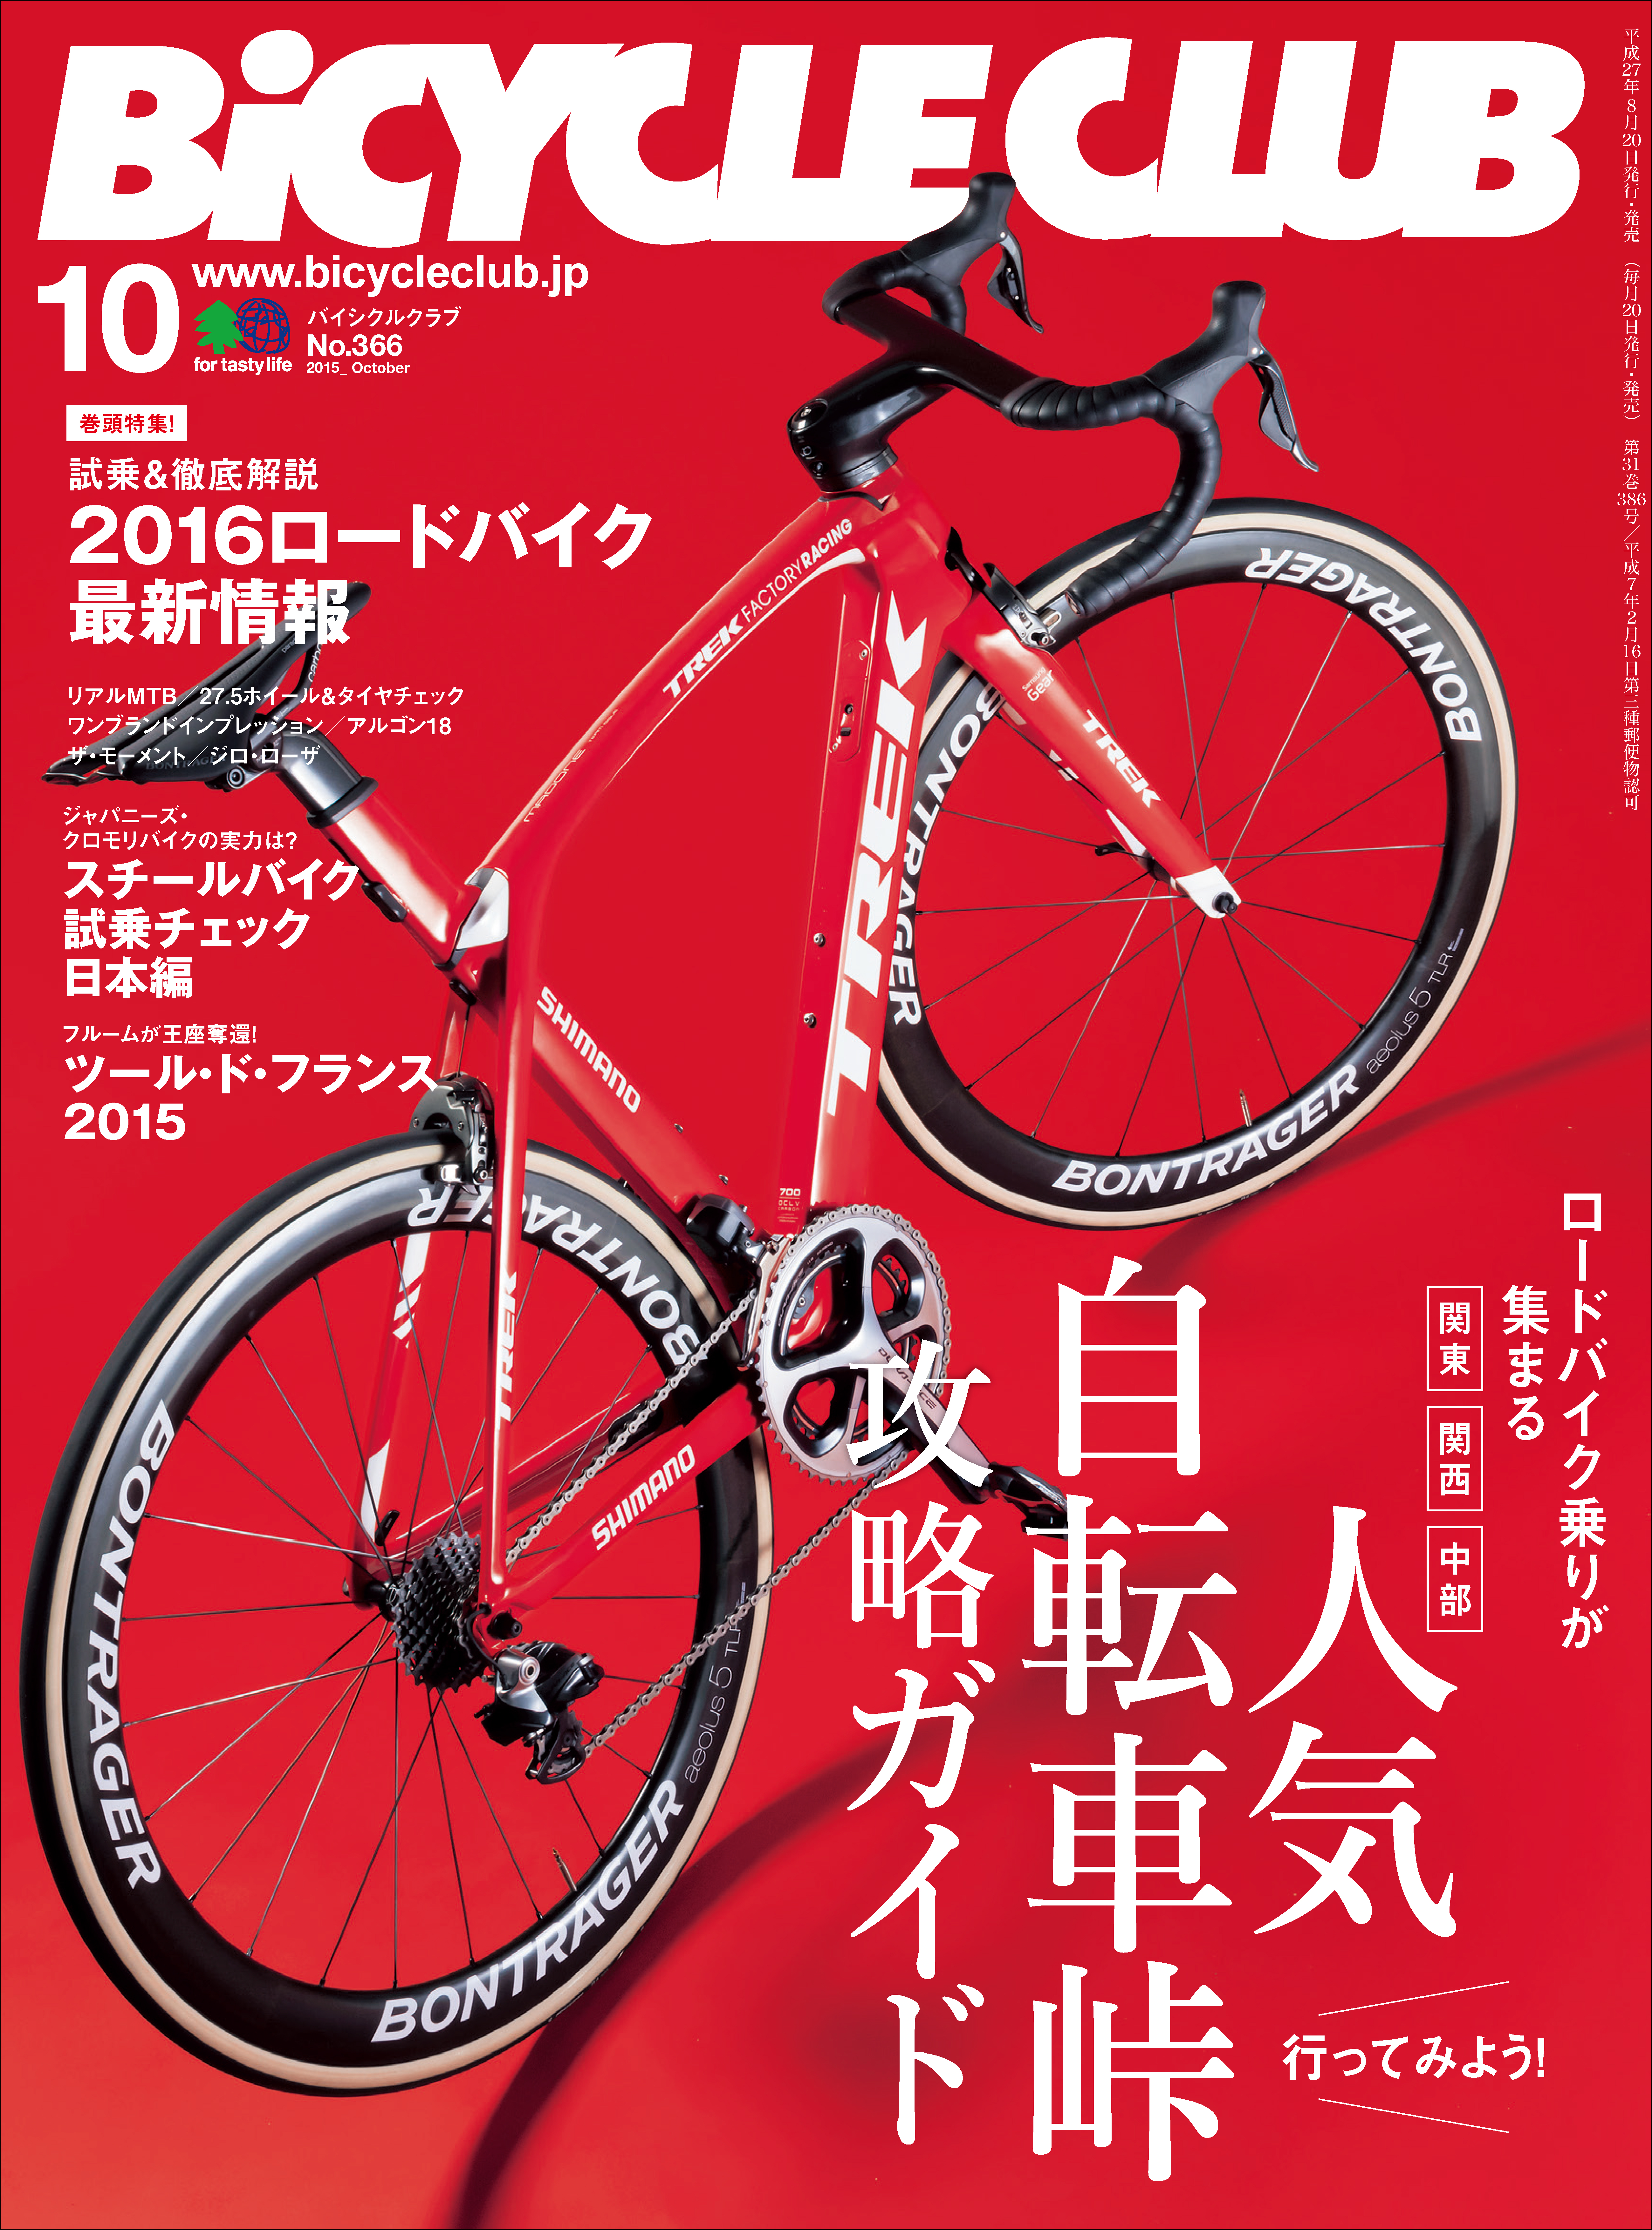 栗村修のサイクルロードレースマニアックス 2015 - 趣味